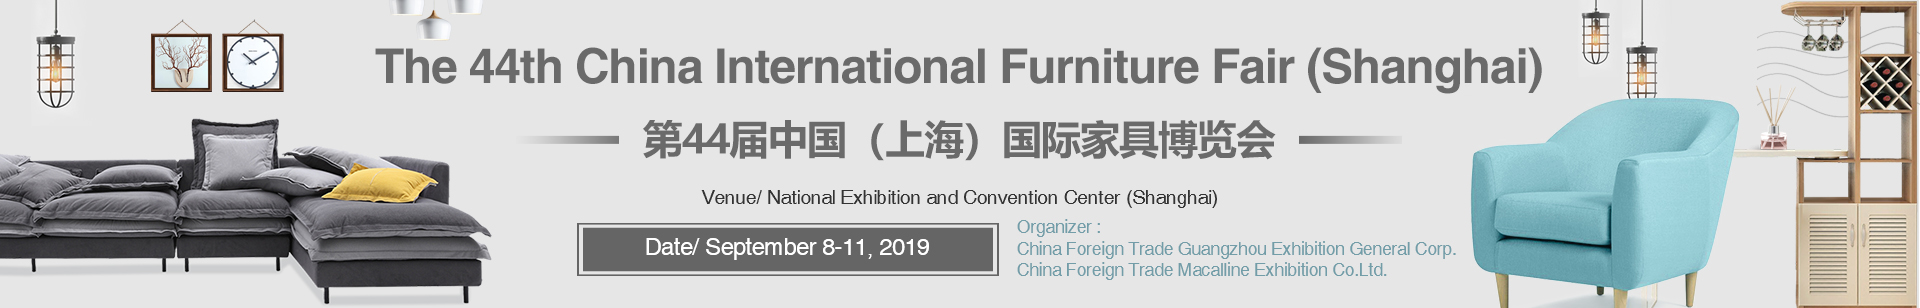 The 44th China International Furniture Fair (Shanghai)